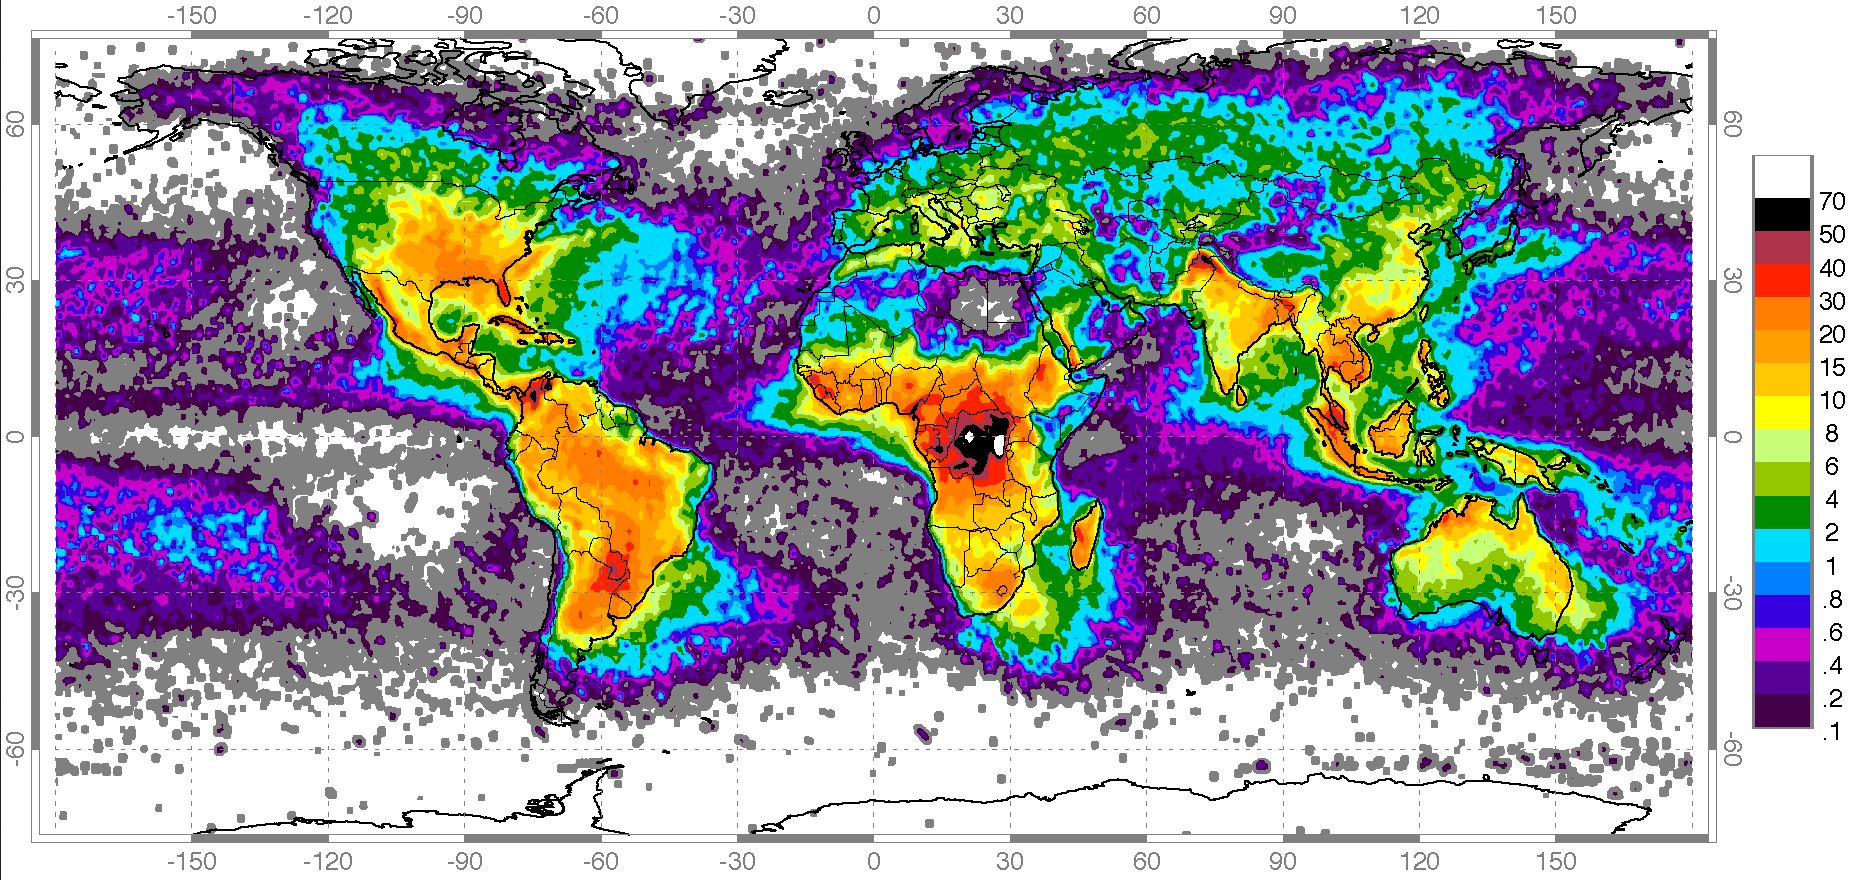 Frequência de raios que atingem o solo (n° de ocorrências por km2 por dia) Crédito: Nasa.gov